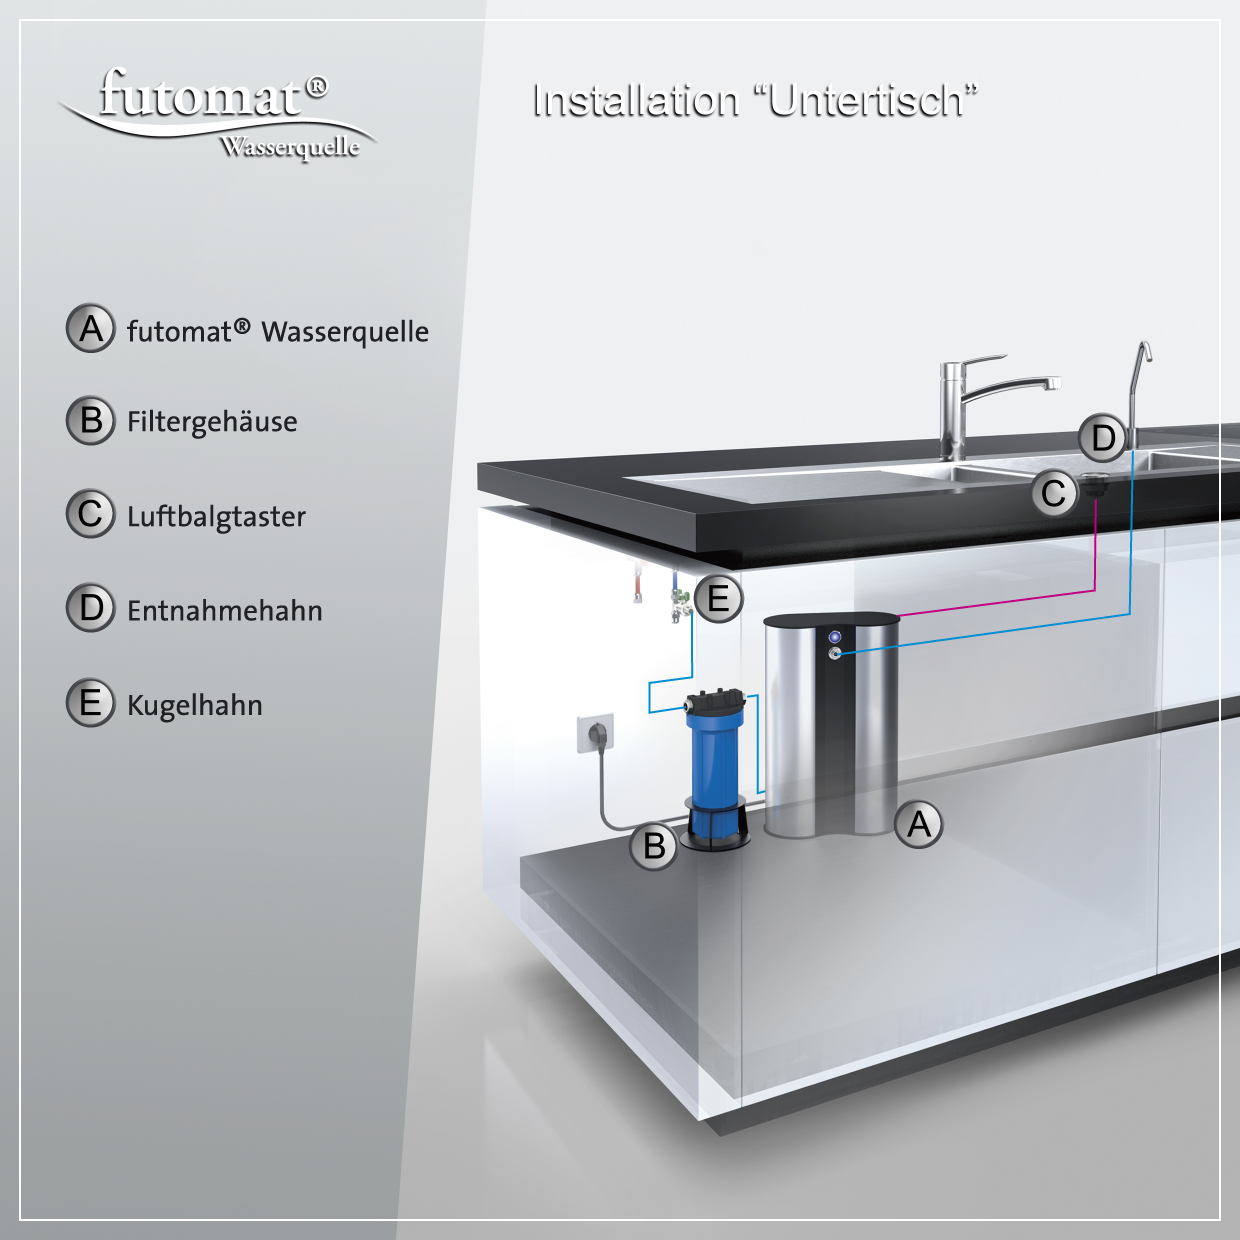 futomat-Wasserspender mit Wasserfilter - Untertisch installiert.